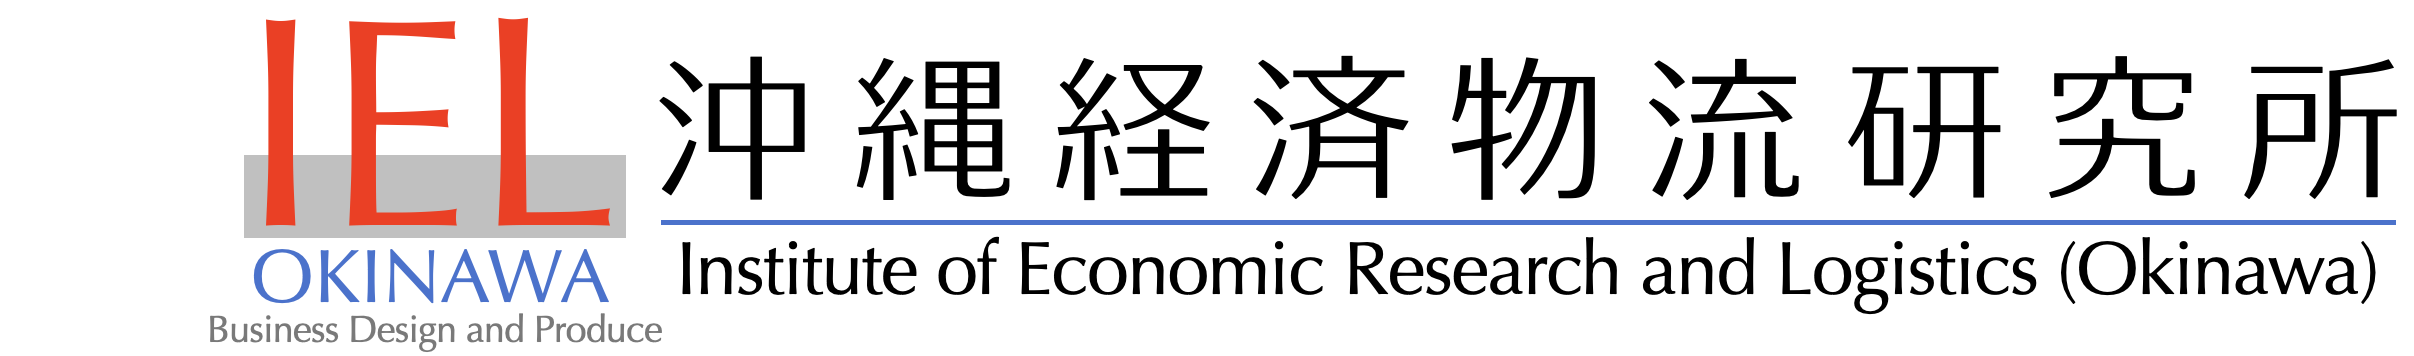 沖縄経済物流研究所 / Institute of Economic Research and Logistics (Okinawa)